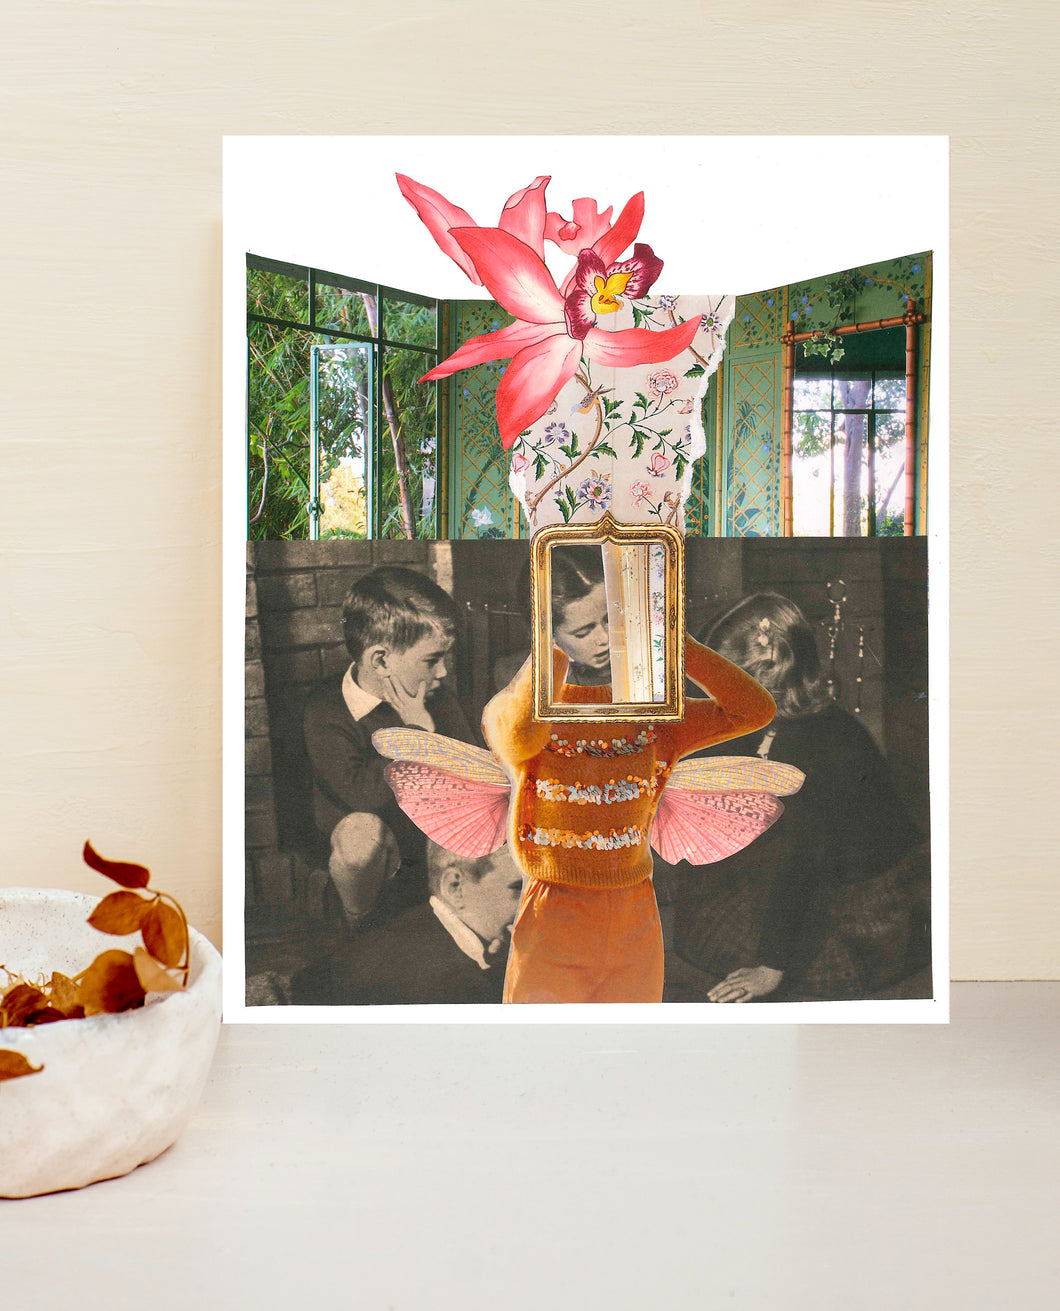 collage papel con fotografía en blanco y negro de niños, la niña del centro se agarra la cabeza y sintoniza con su yo cósmico integrando todo su potencial del universo, representado por una orquídea rosa